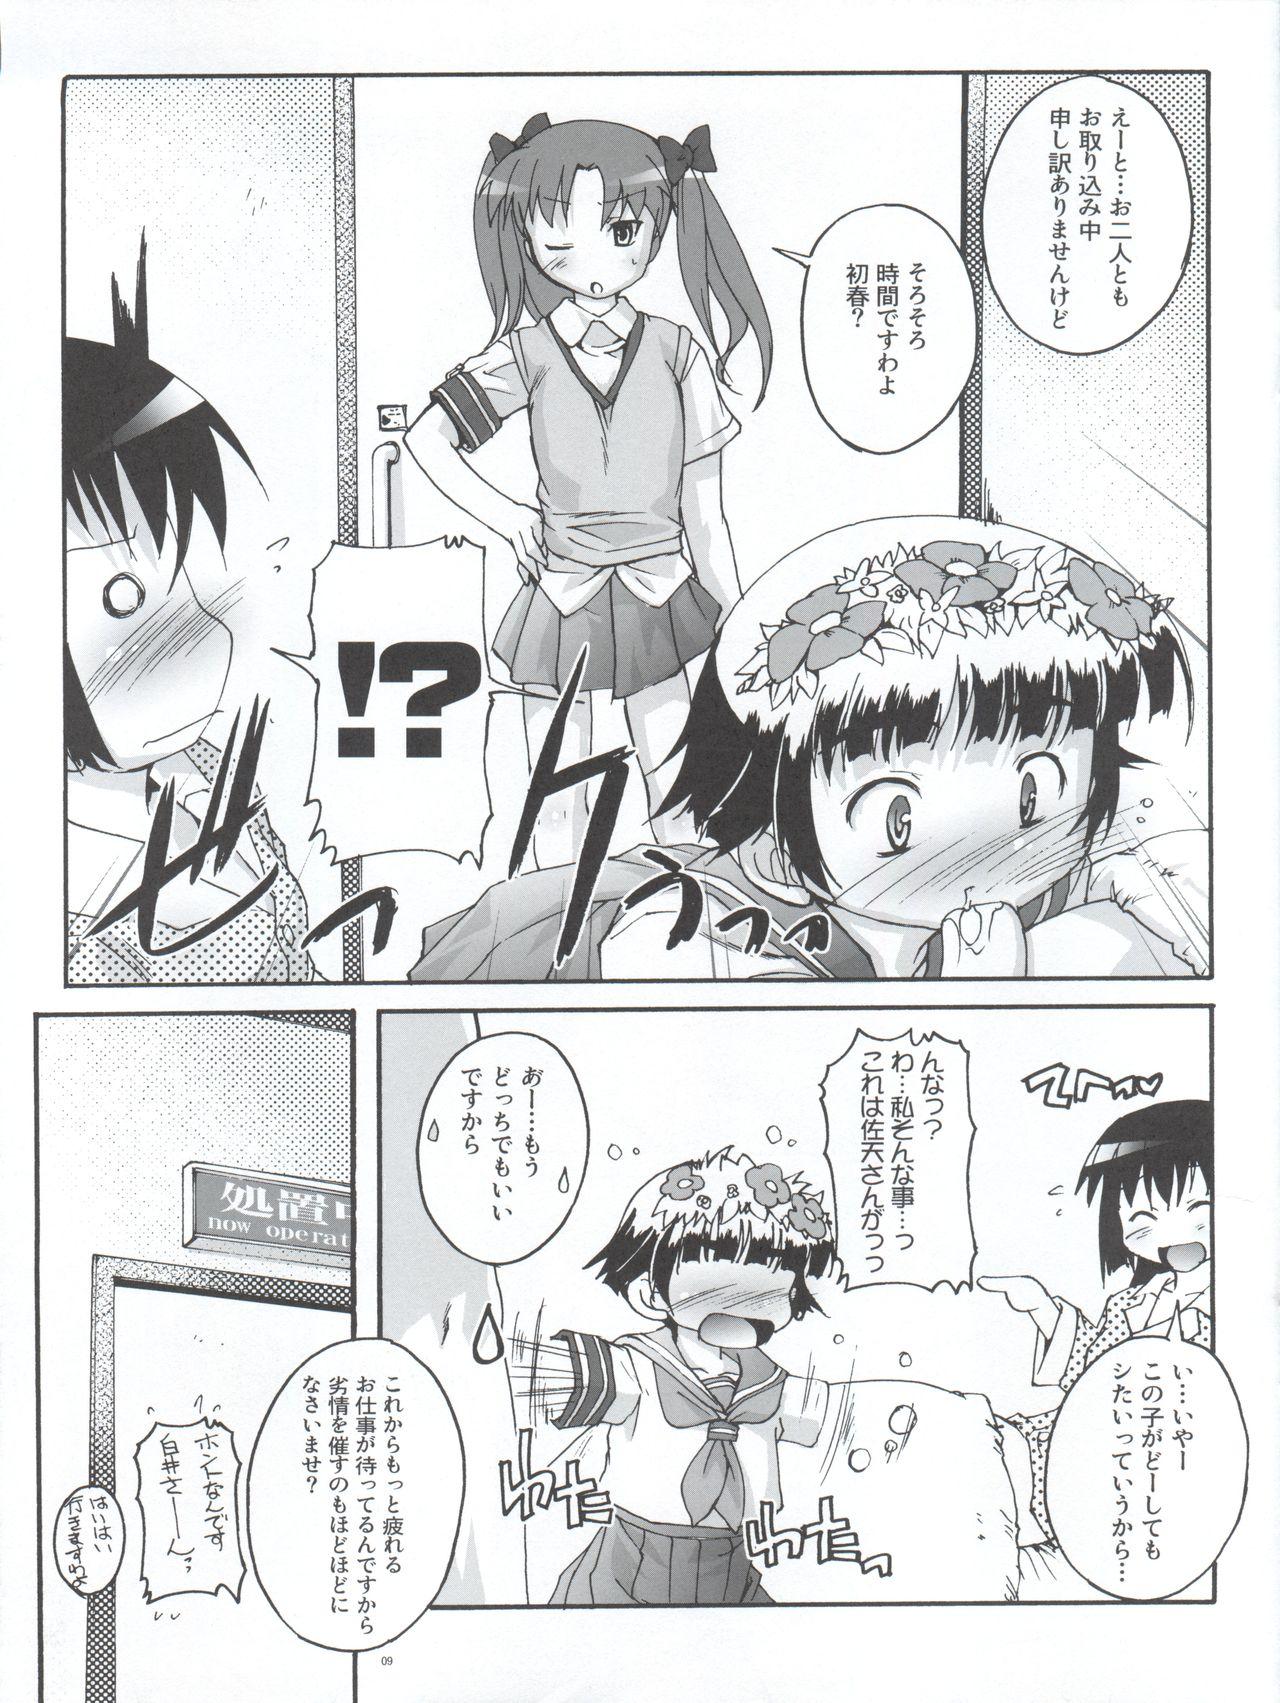 Mmf Kanzen Nenshou 18 Judgment no Oshigoto desu no! - Toaru kagaku no railgun Ass To Mouth - Page 9